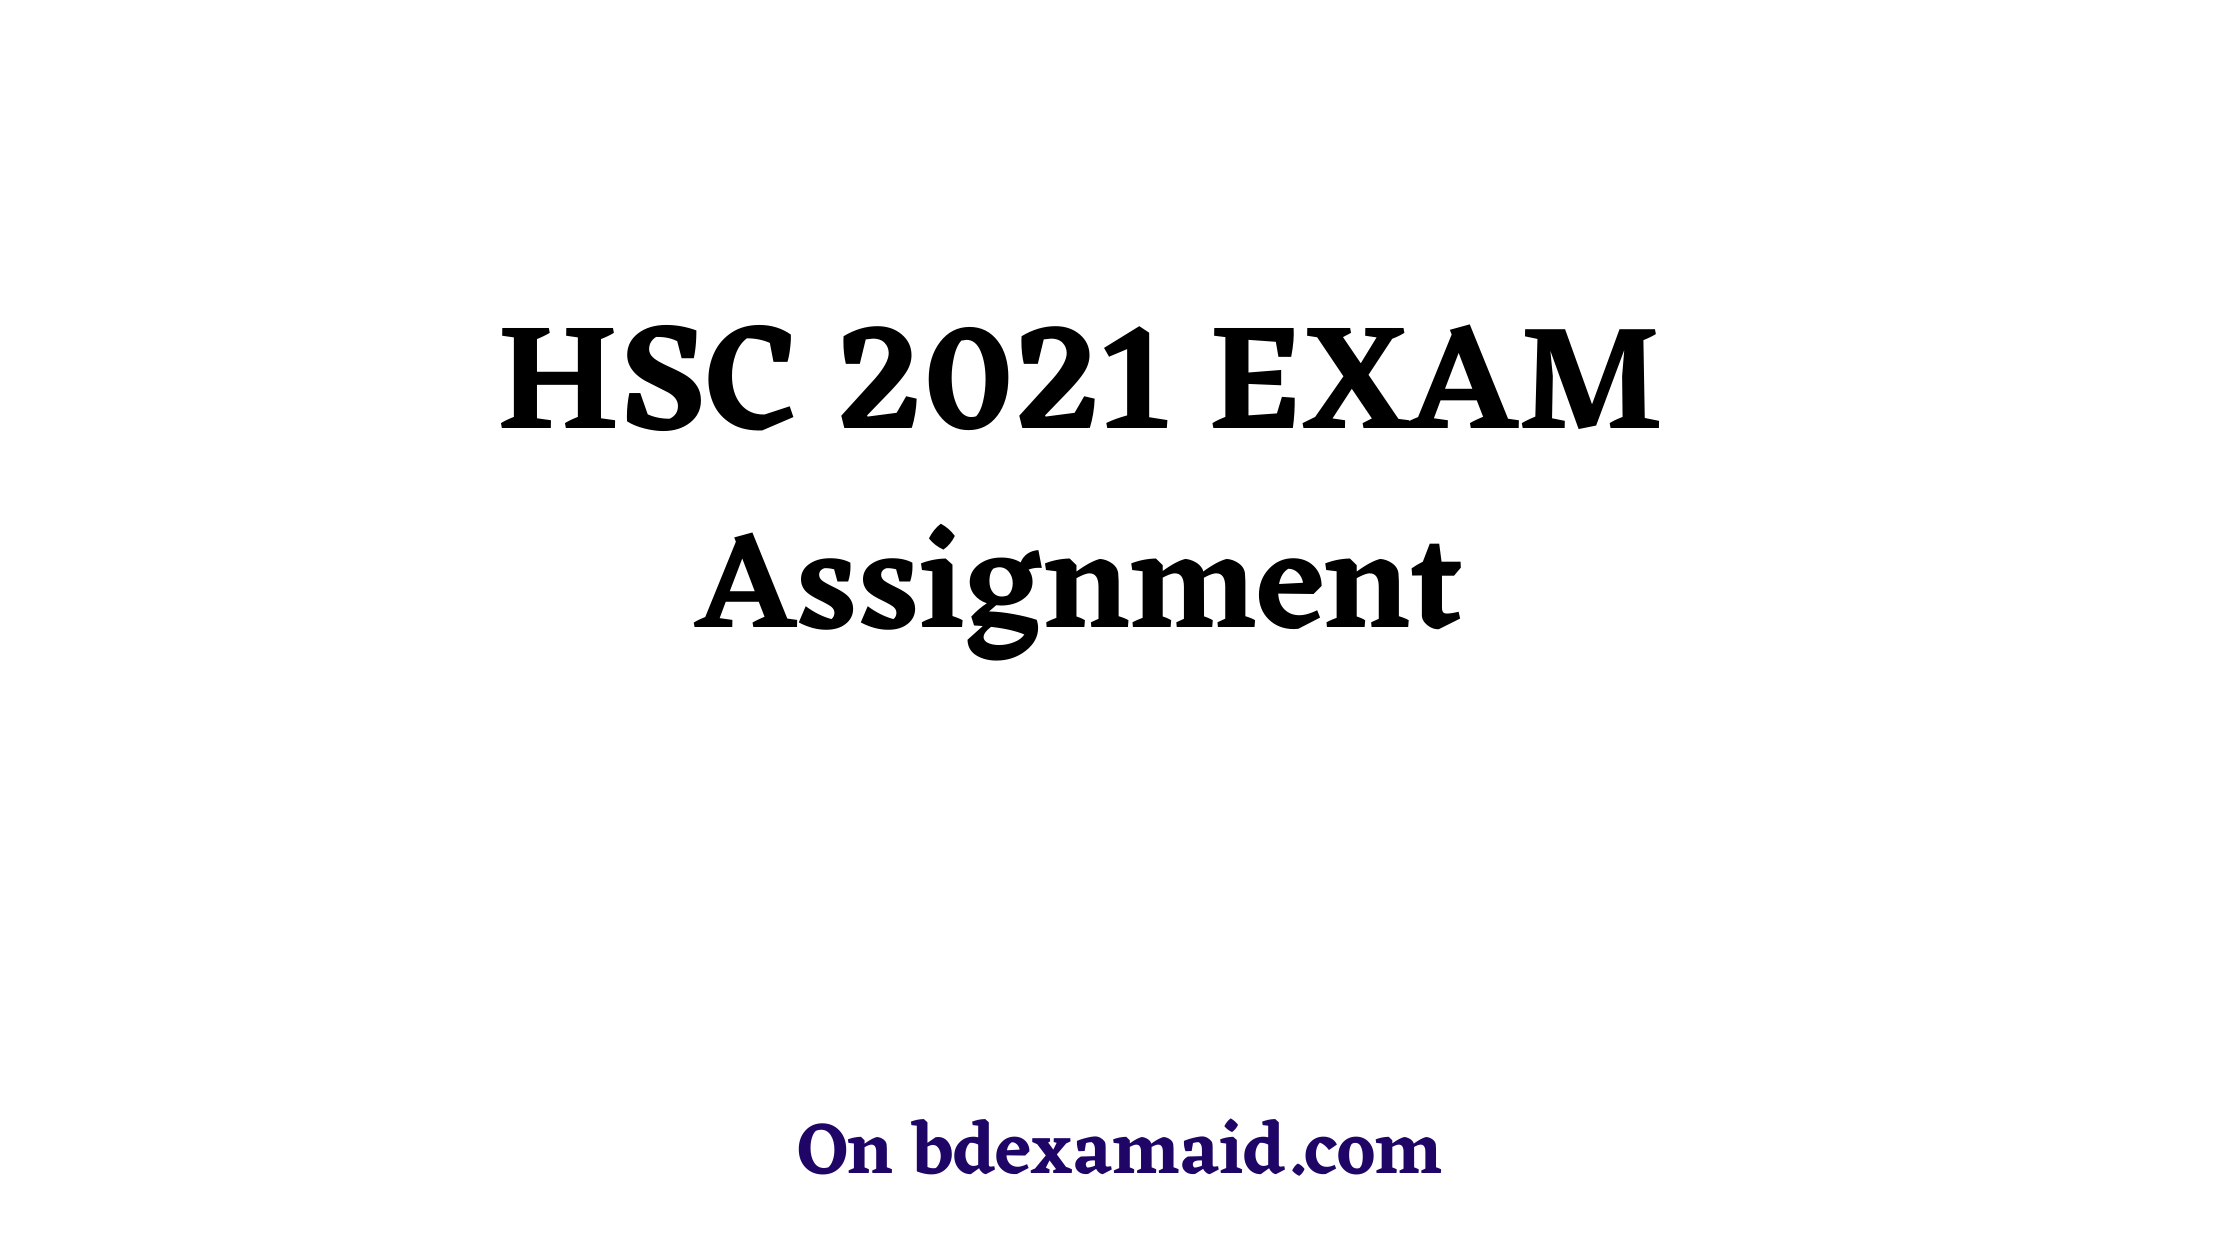 assignment form hsc 2021